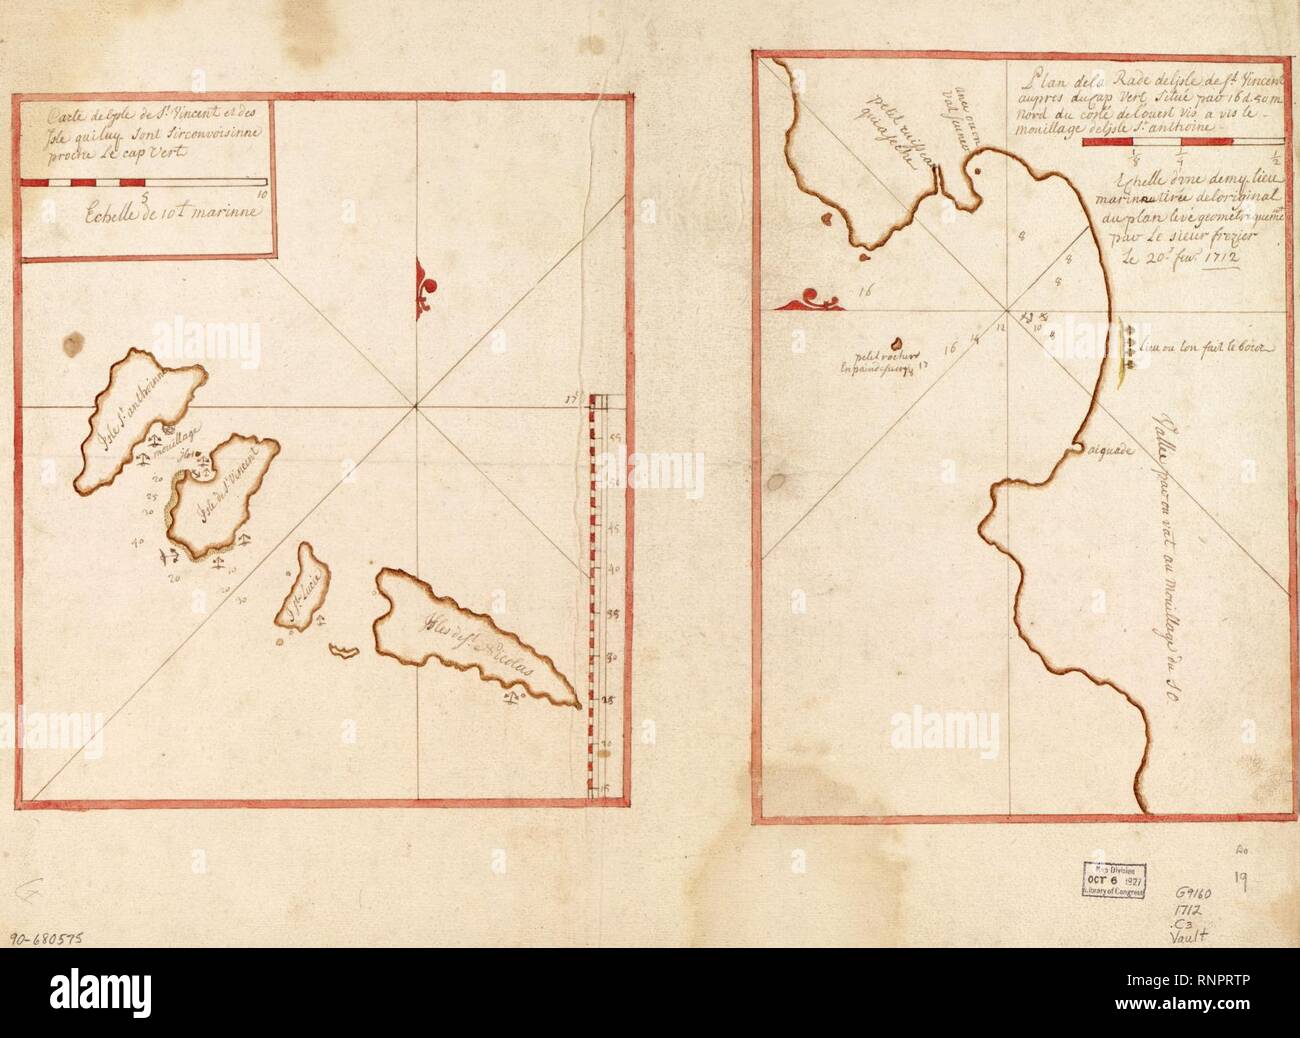 Carte de l'Isle de St. Vincent et des isle quiluq sont sirconvoisinne proche le Cap Vert ; Plan de la rade de l'Isle de St. Vincent aupres du Cap Vert situe pao 16 d. 50 m. nord du coste de l'ouest Stock Photo